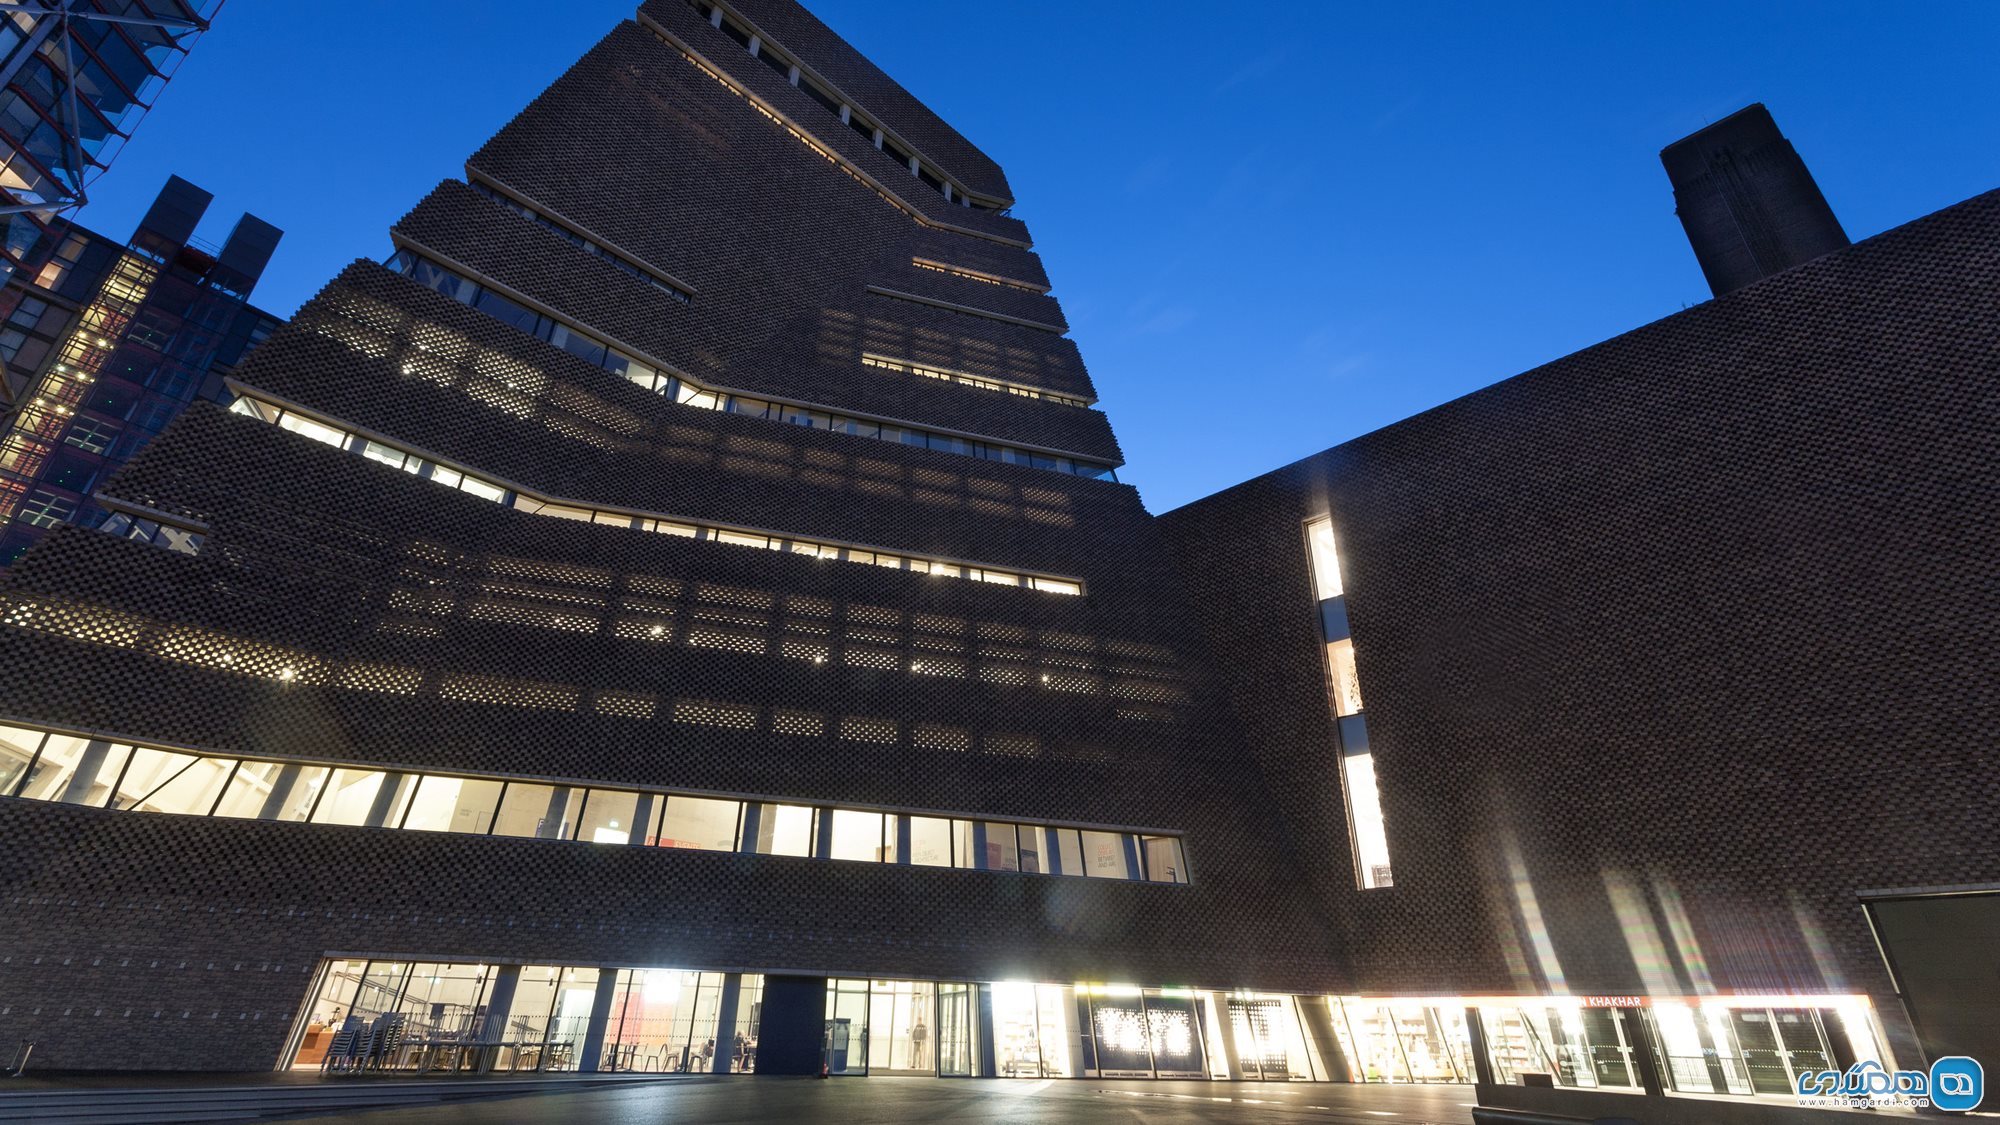 تیت مدرن شهر لندن در کشور بریتانیا Tate Modern